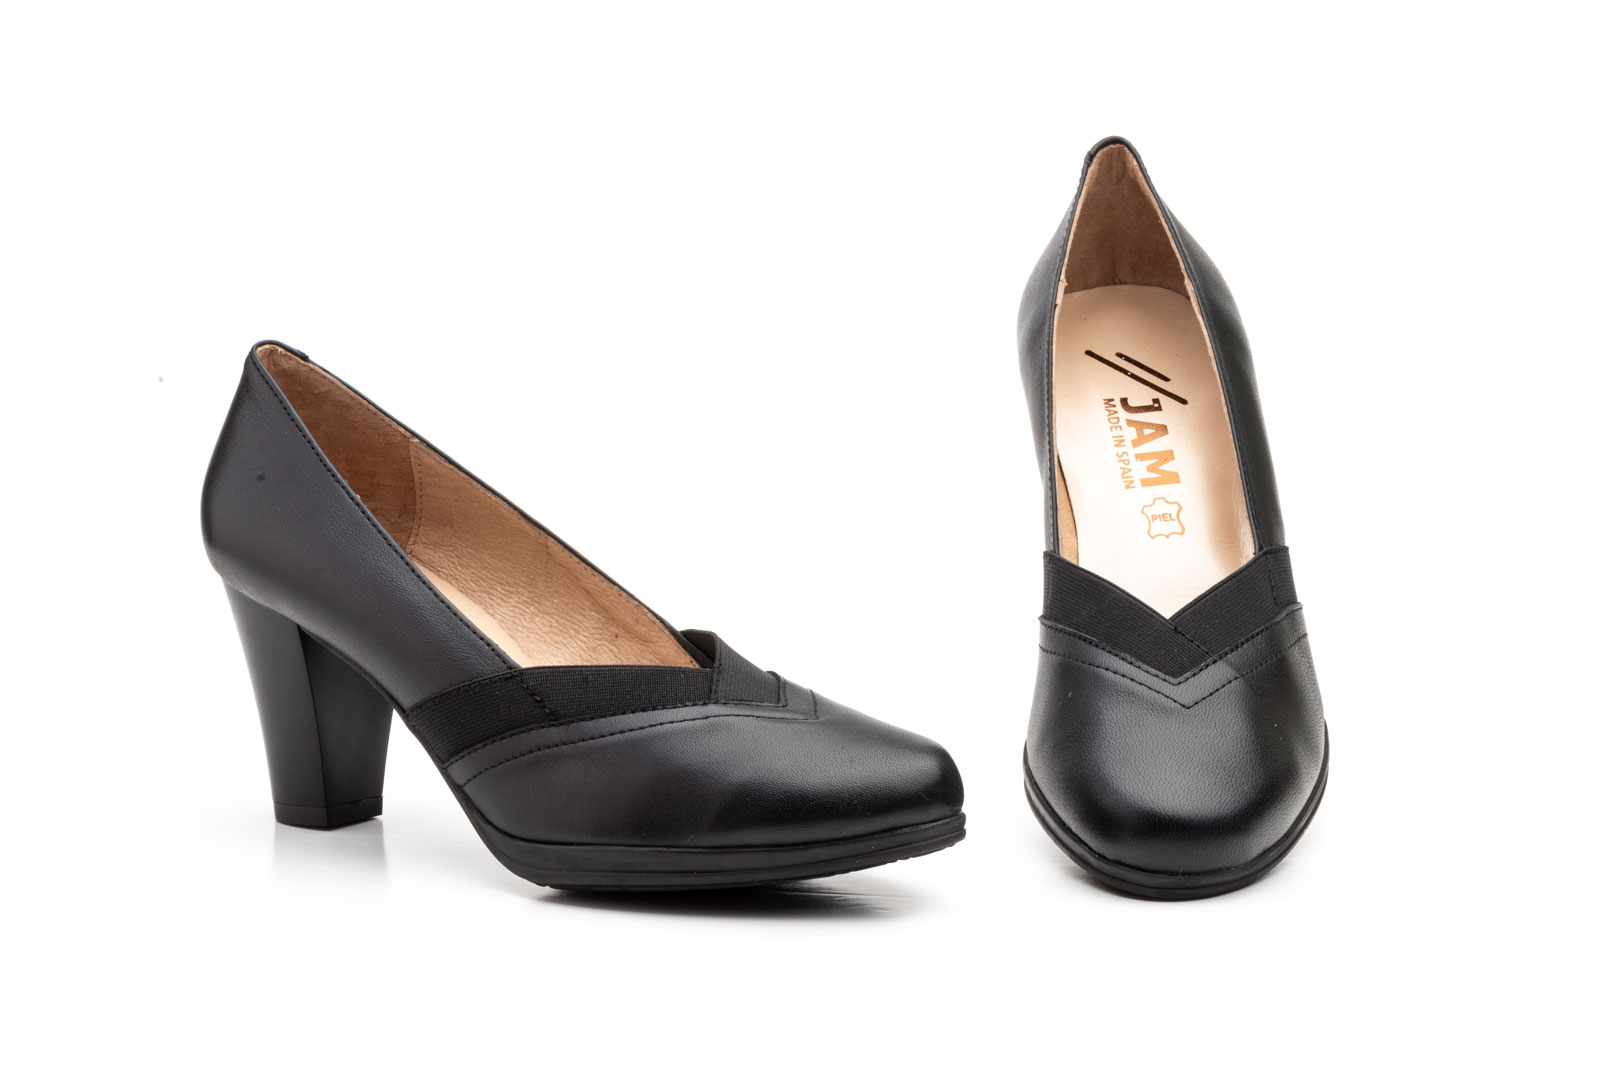 Zapatos Mujer Piel Negro Elásticos  -  Ref. 5901 Negro